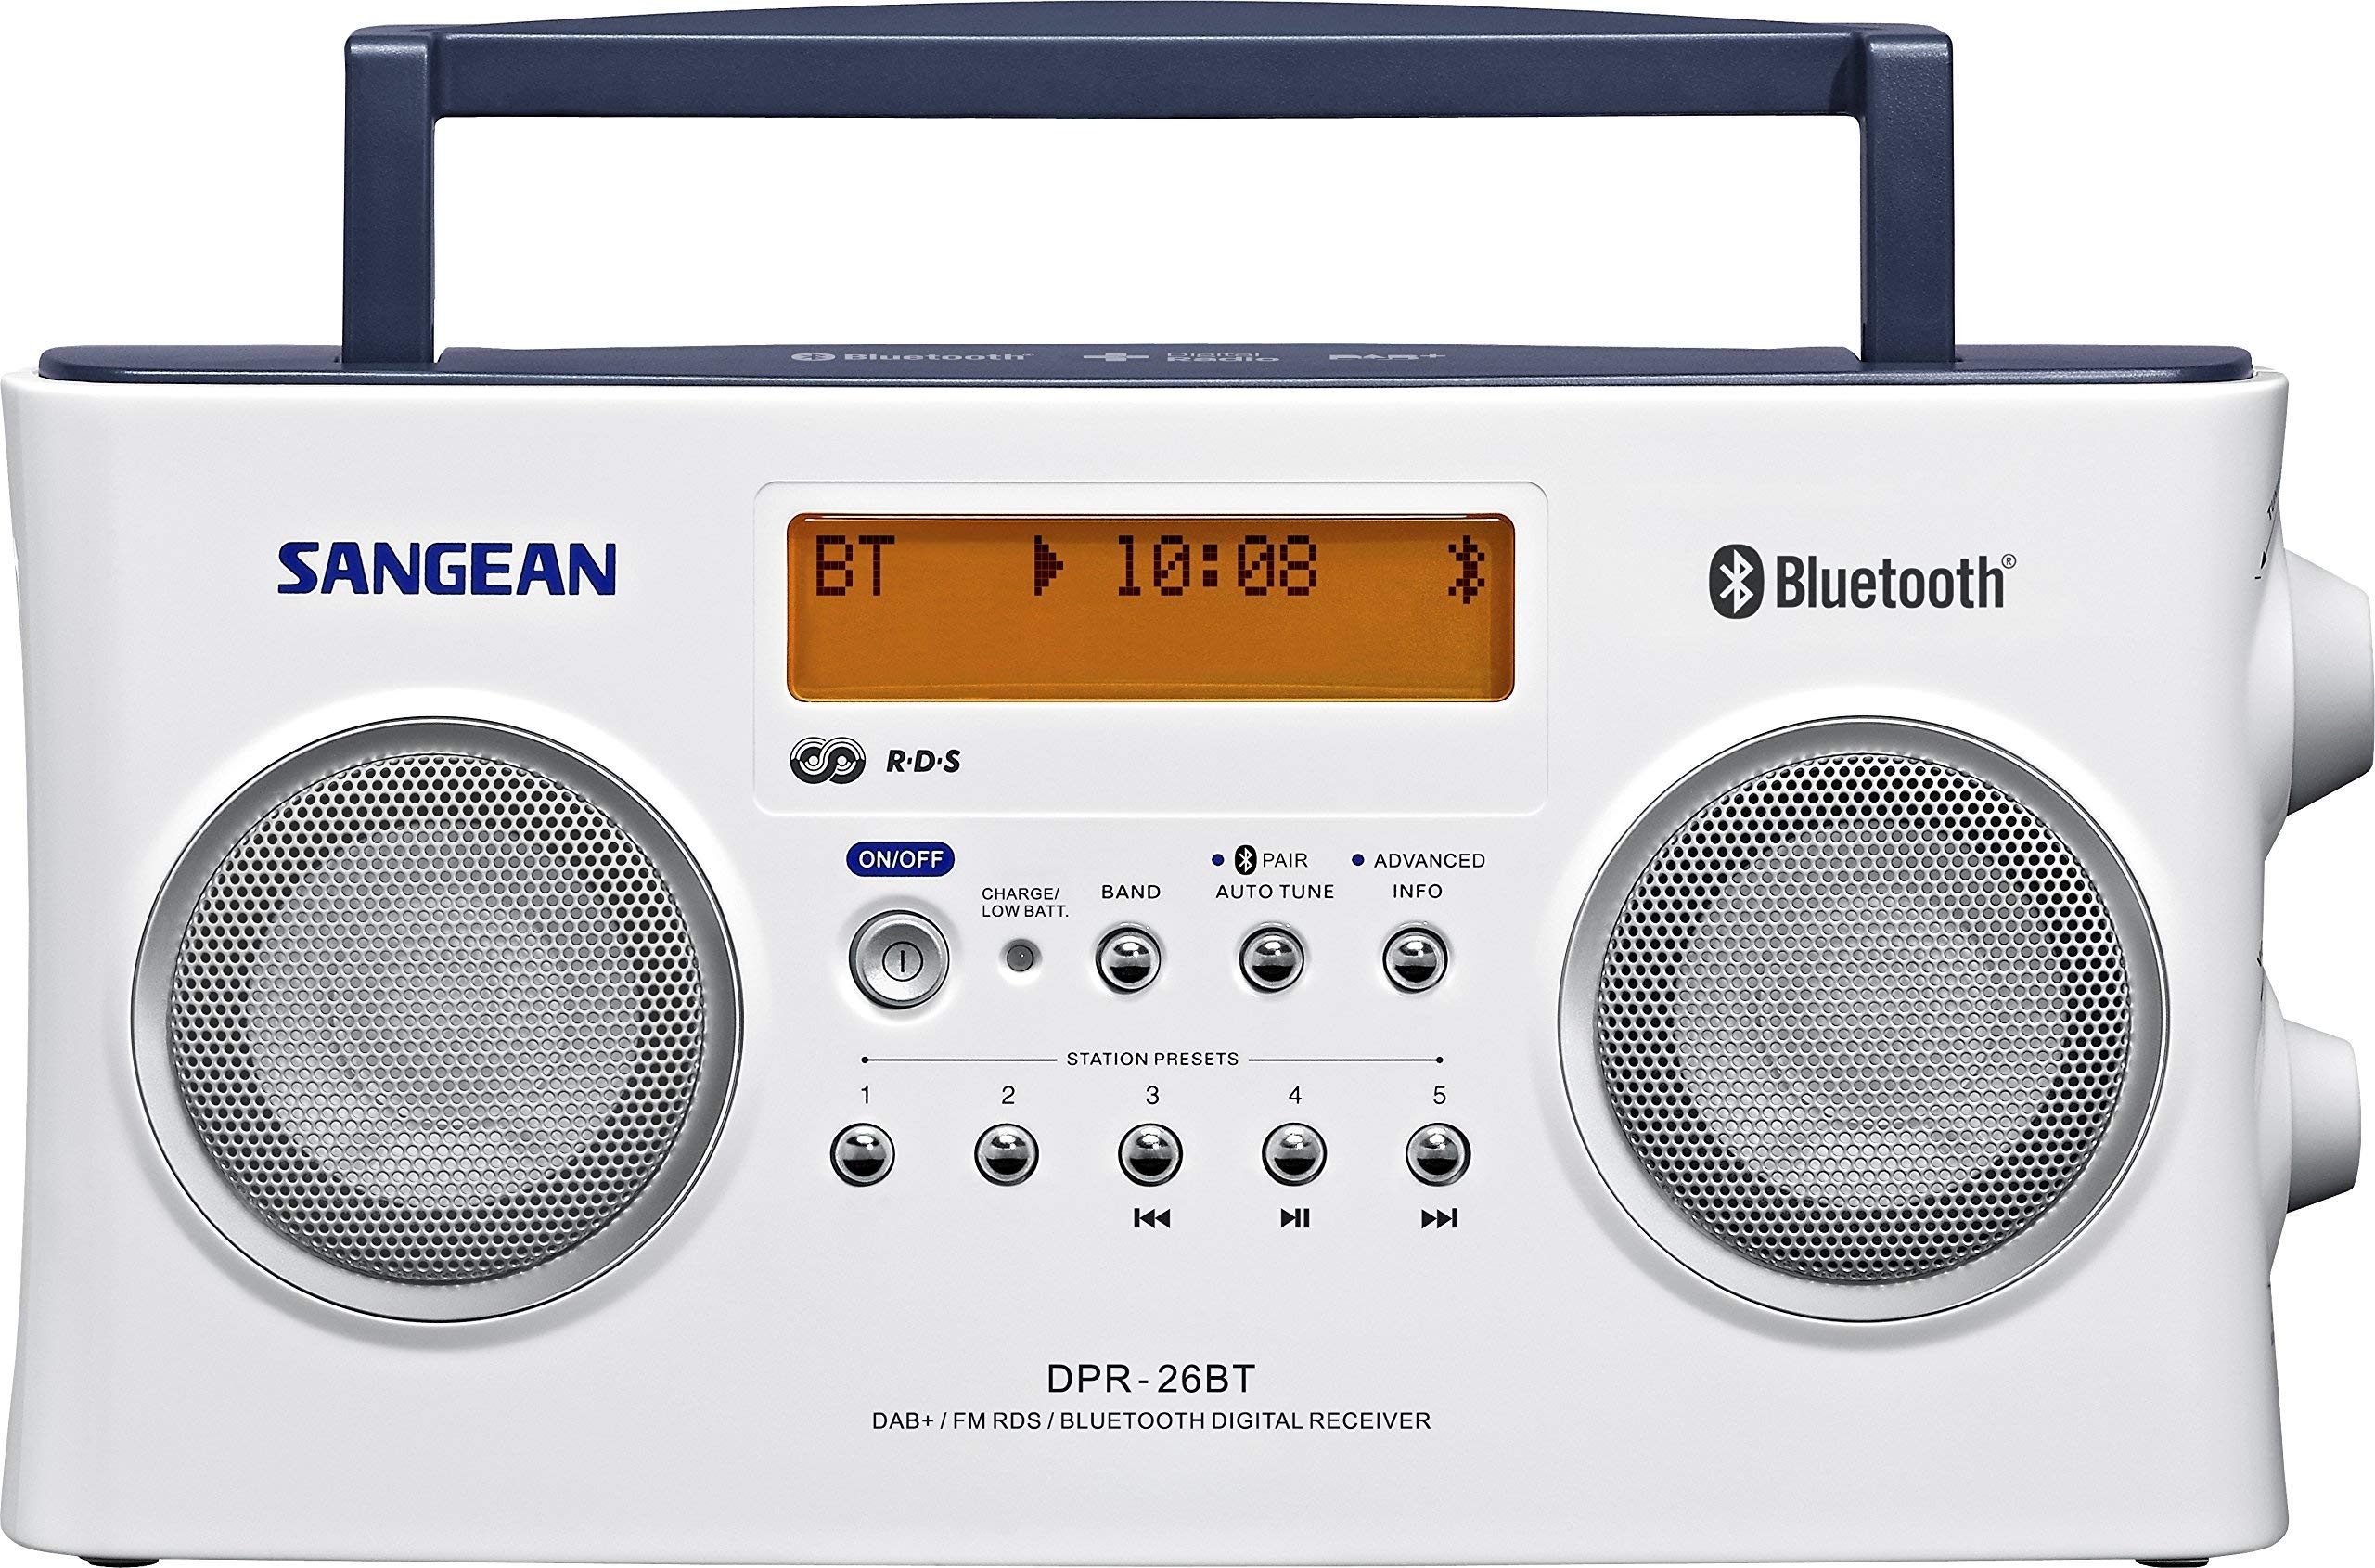 Sangean DPR-26BT tragbares DAB+ Digitalradio (UKW-Tuner, Bluetooth, AUX-In) weiß